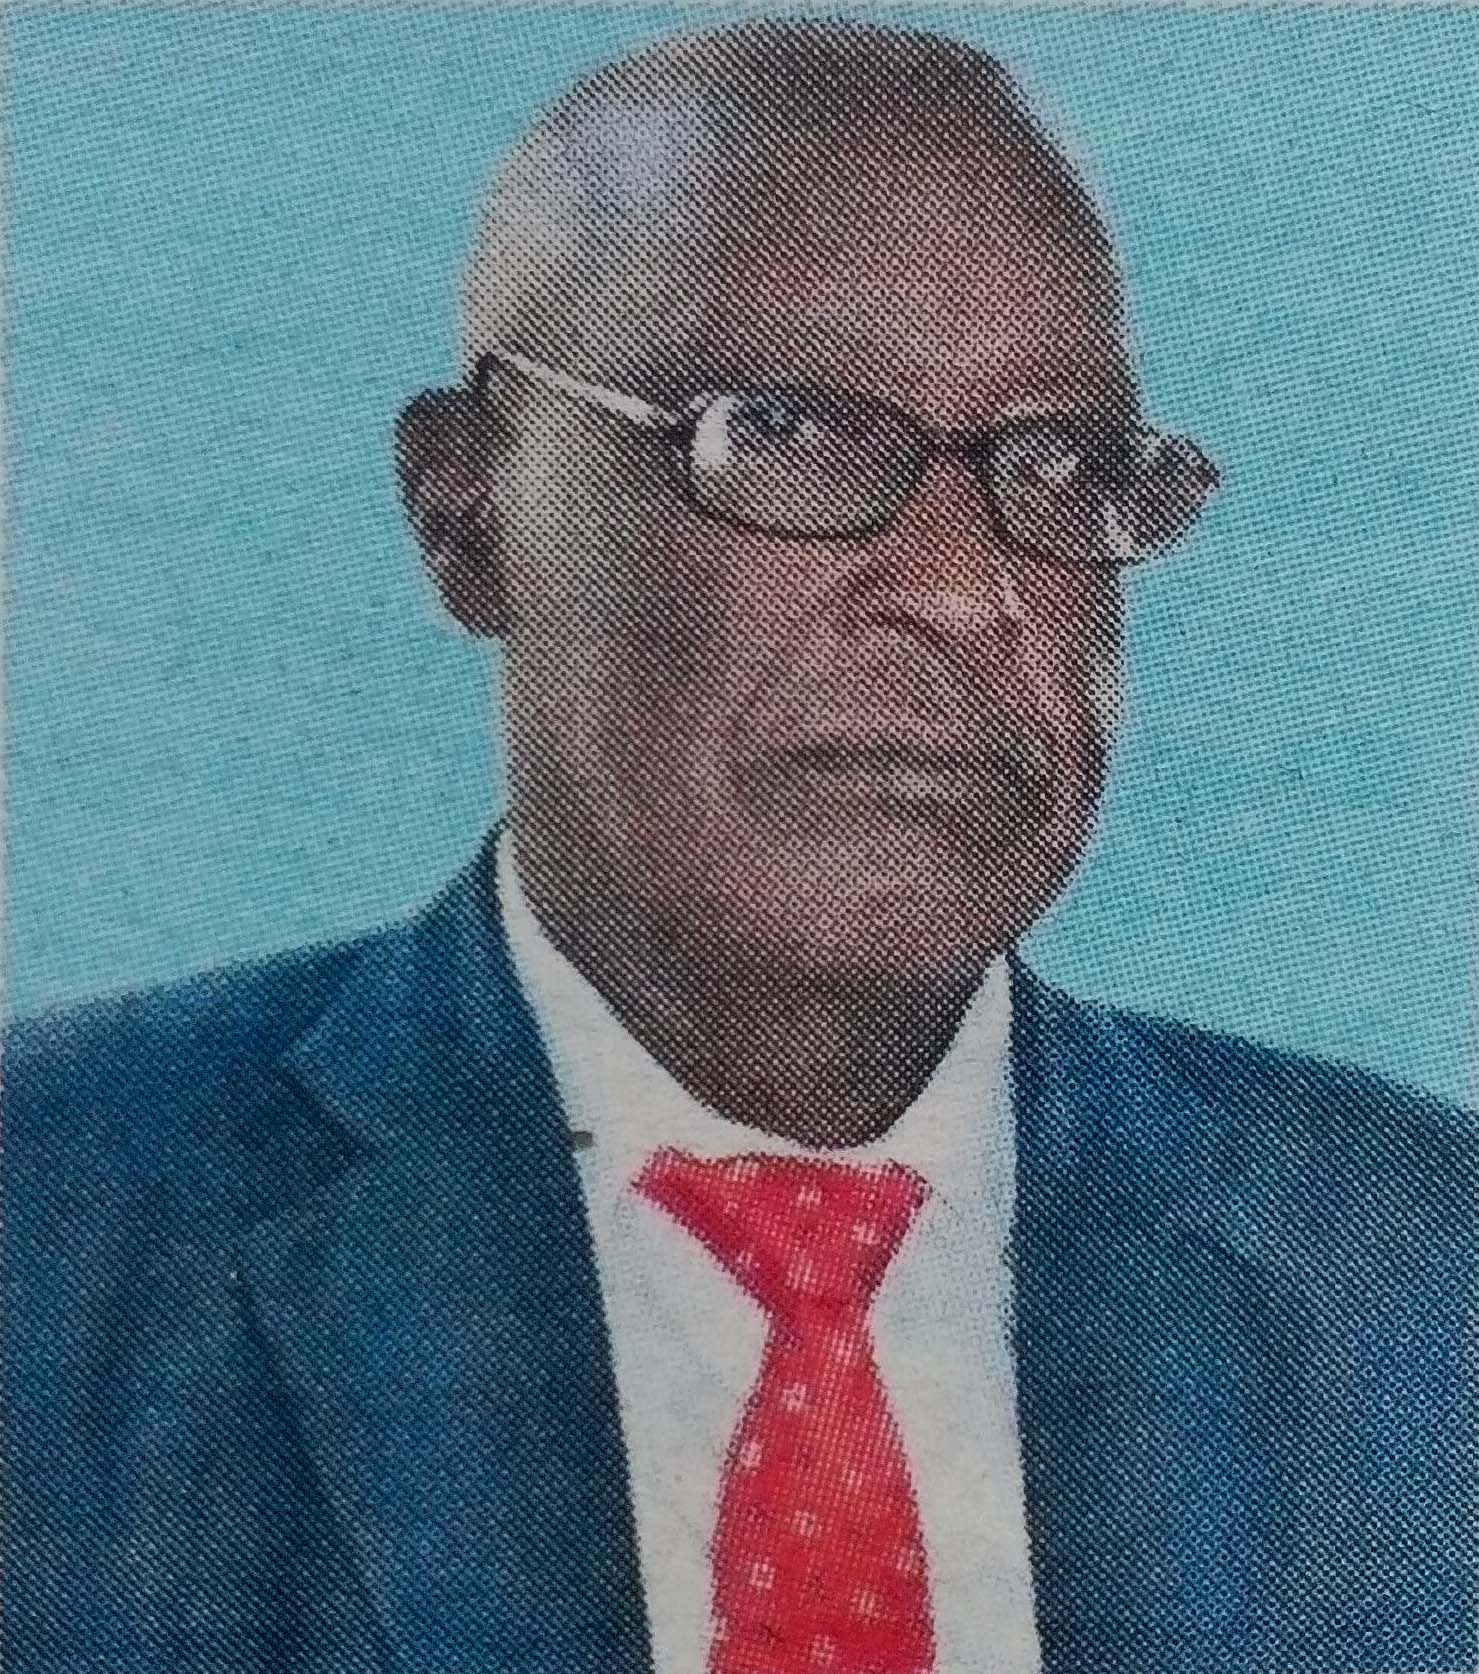 Obituary Image of Rtd Snr Chief Gideon Kimathi Nkanatha Kibua